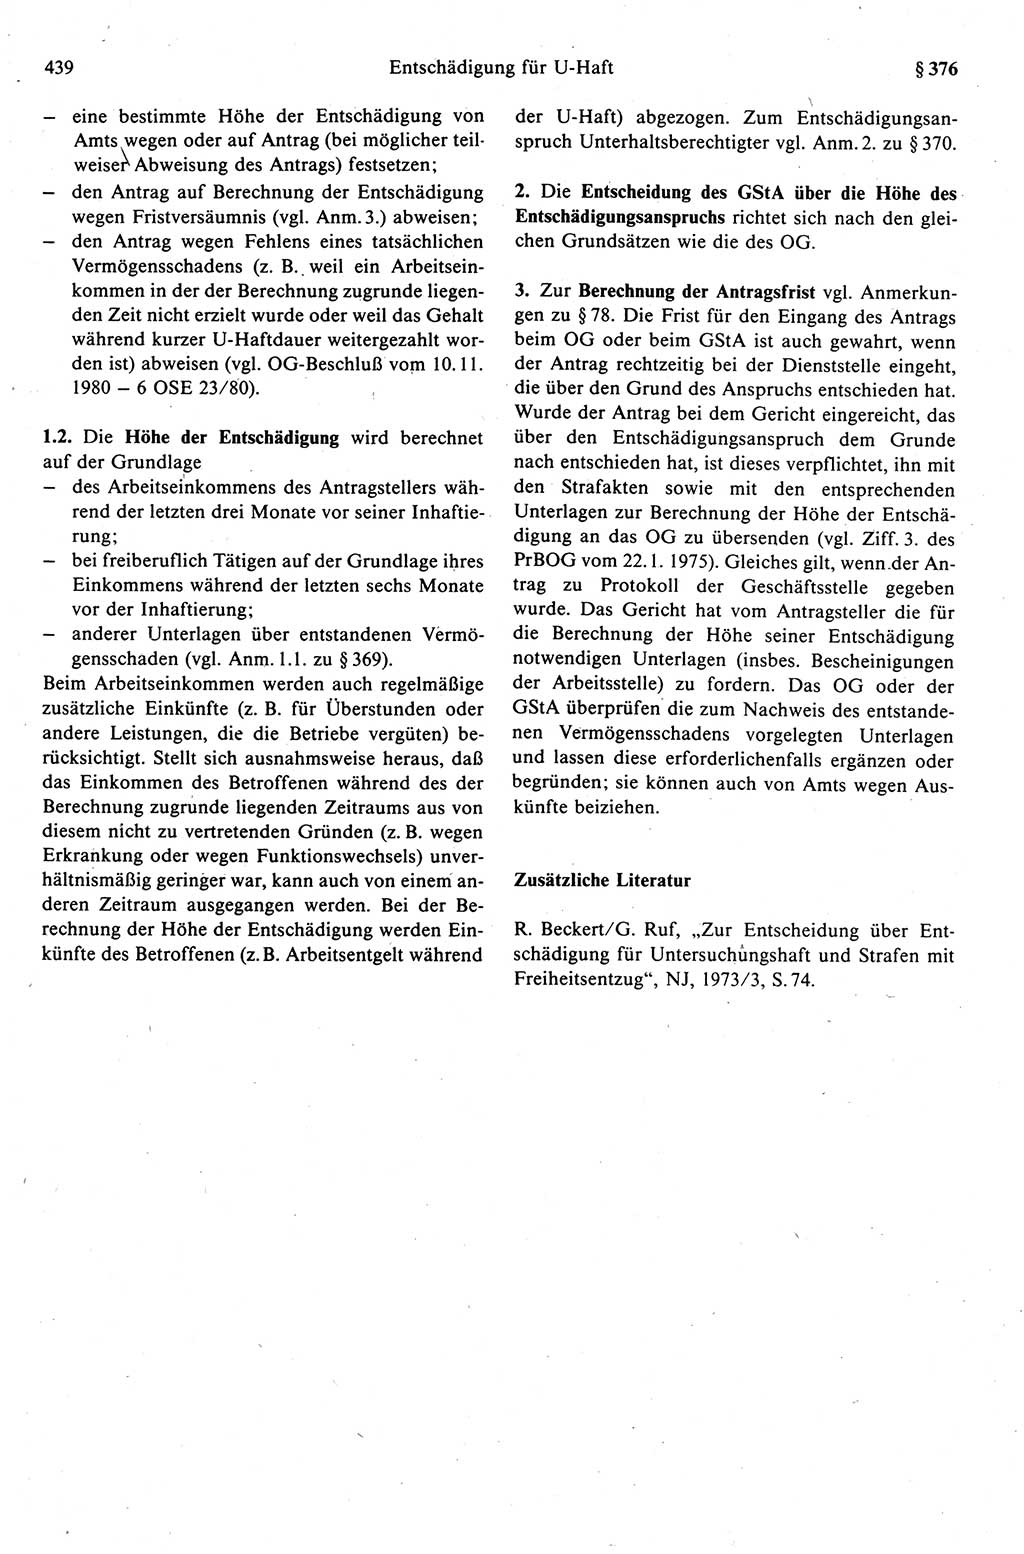 Strafprozeßrecht der DDR (Deutsche Demokratische Republik), Kommentar zur Strafprozeßordnung (StPO) 1989, Seite 439 (Strafprozeßr. DDR Komm. StPO 1989, S. 439)